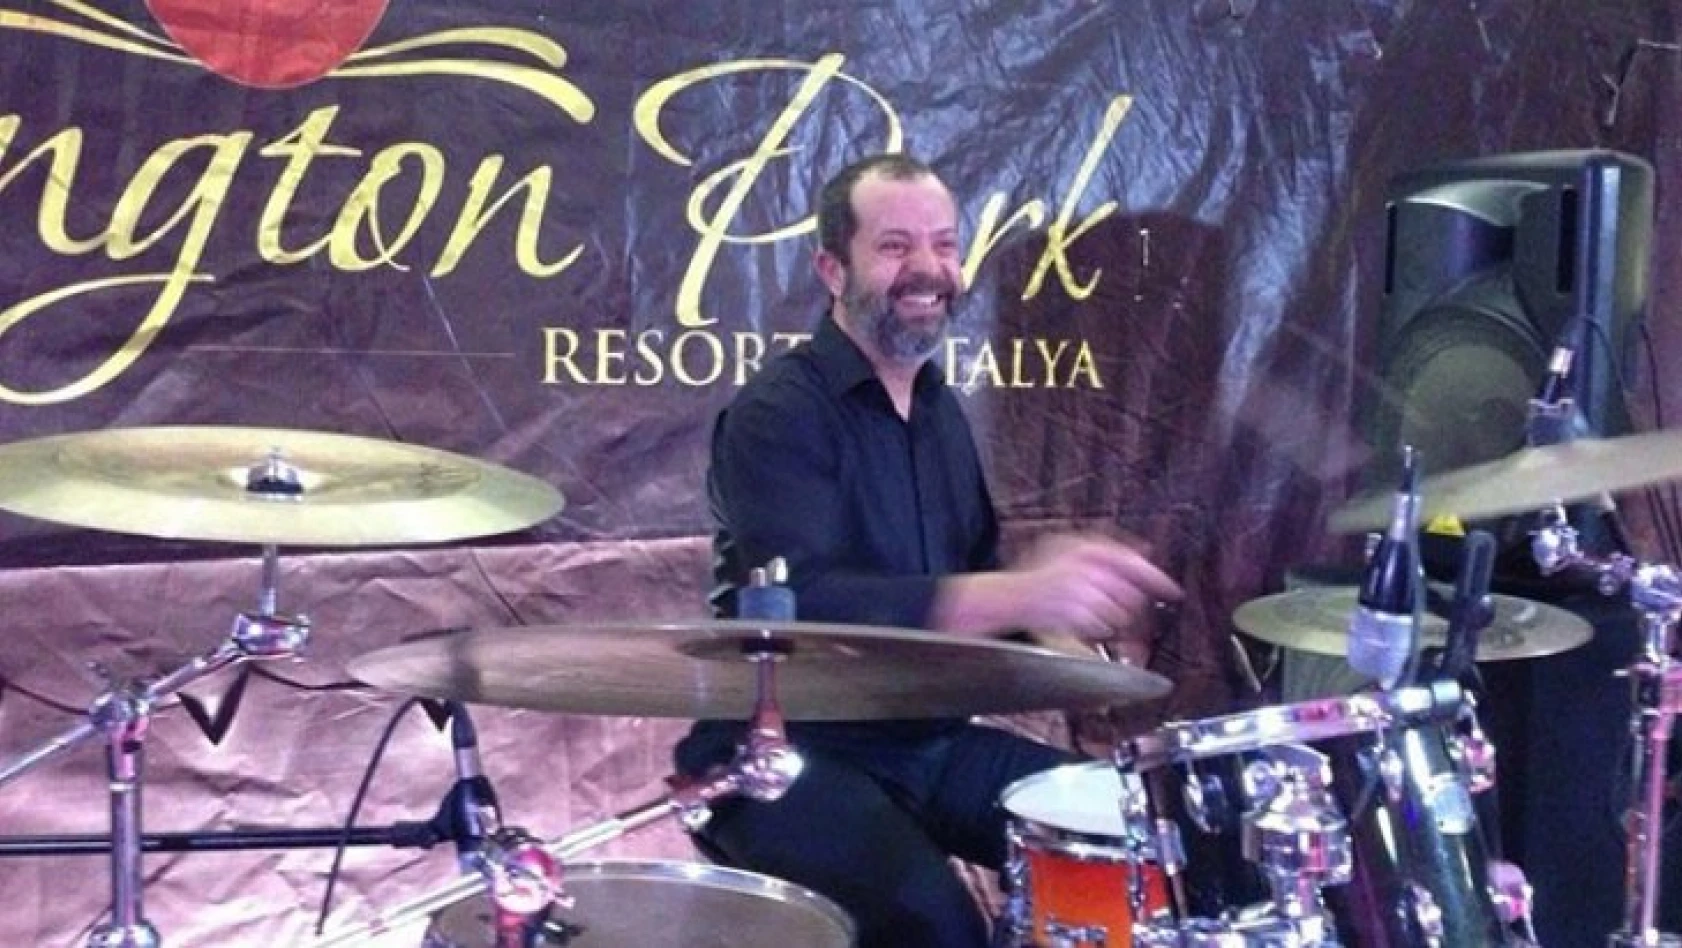 Müzisyen Fatih Övgü, kalp krizi nedeniyle hayatını kaybetti